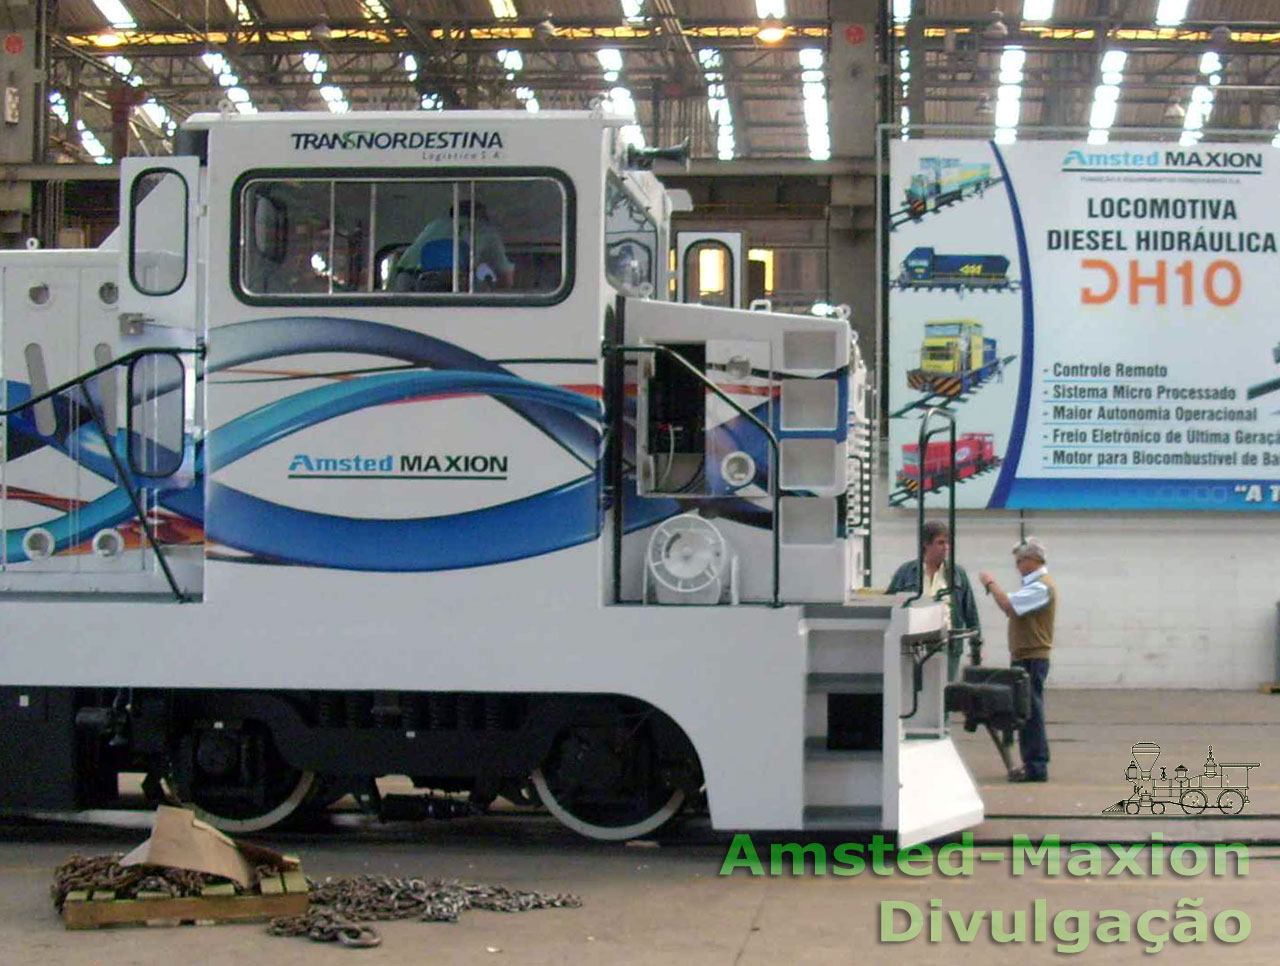 Publicidade da locomotiva DH-10 da CFN - Companhia Ferroviária do Nordeste